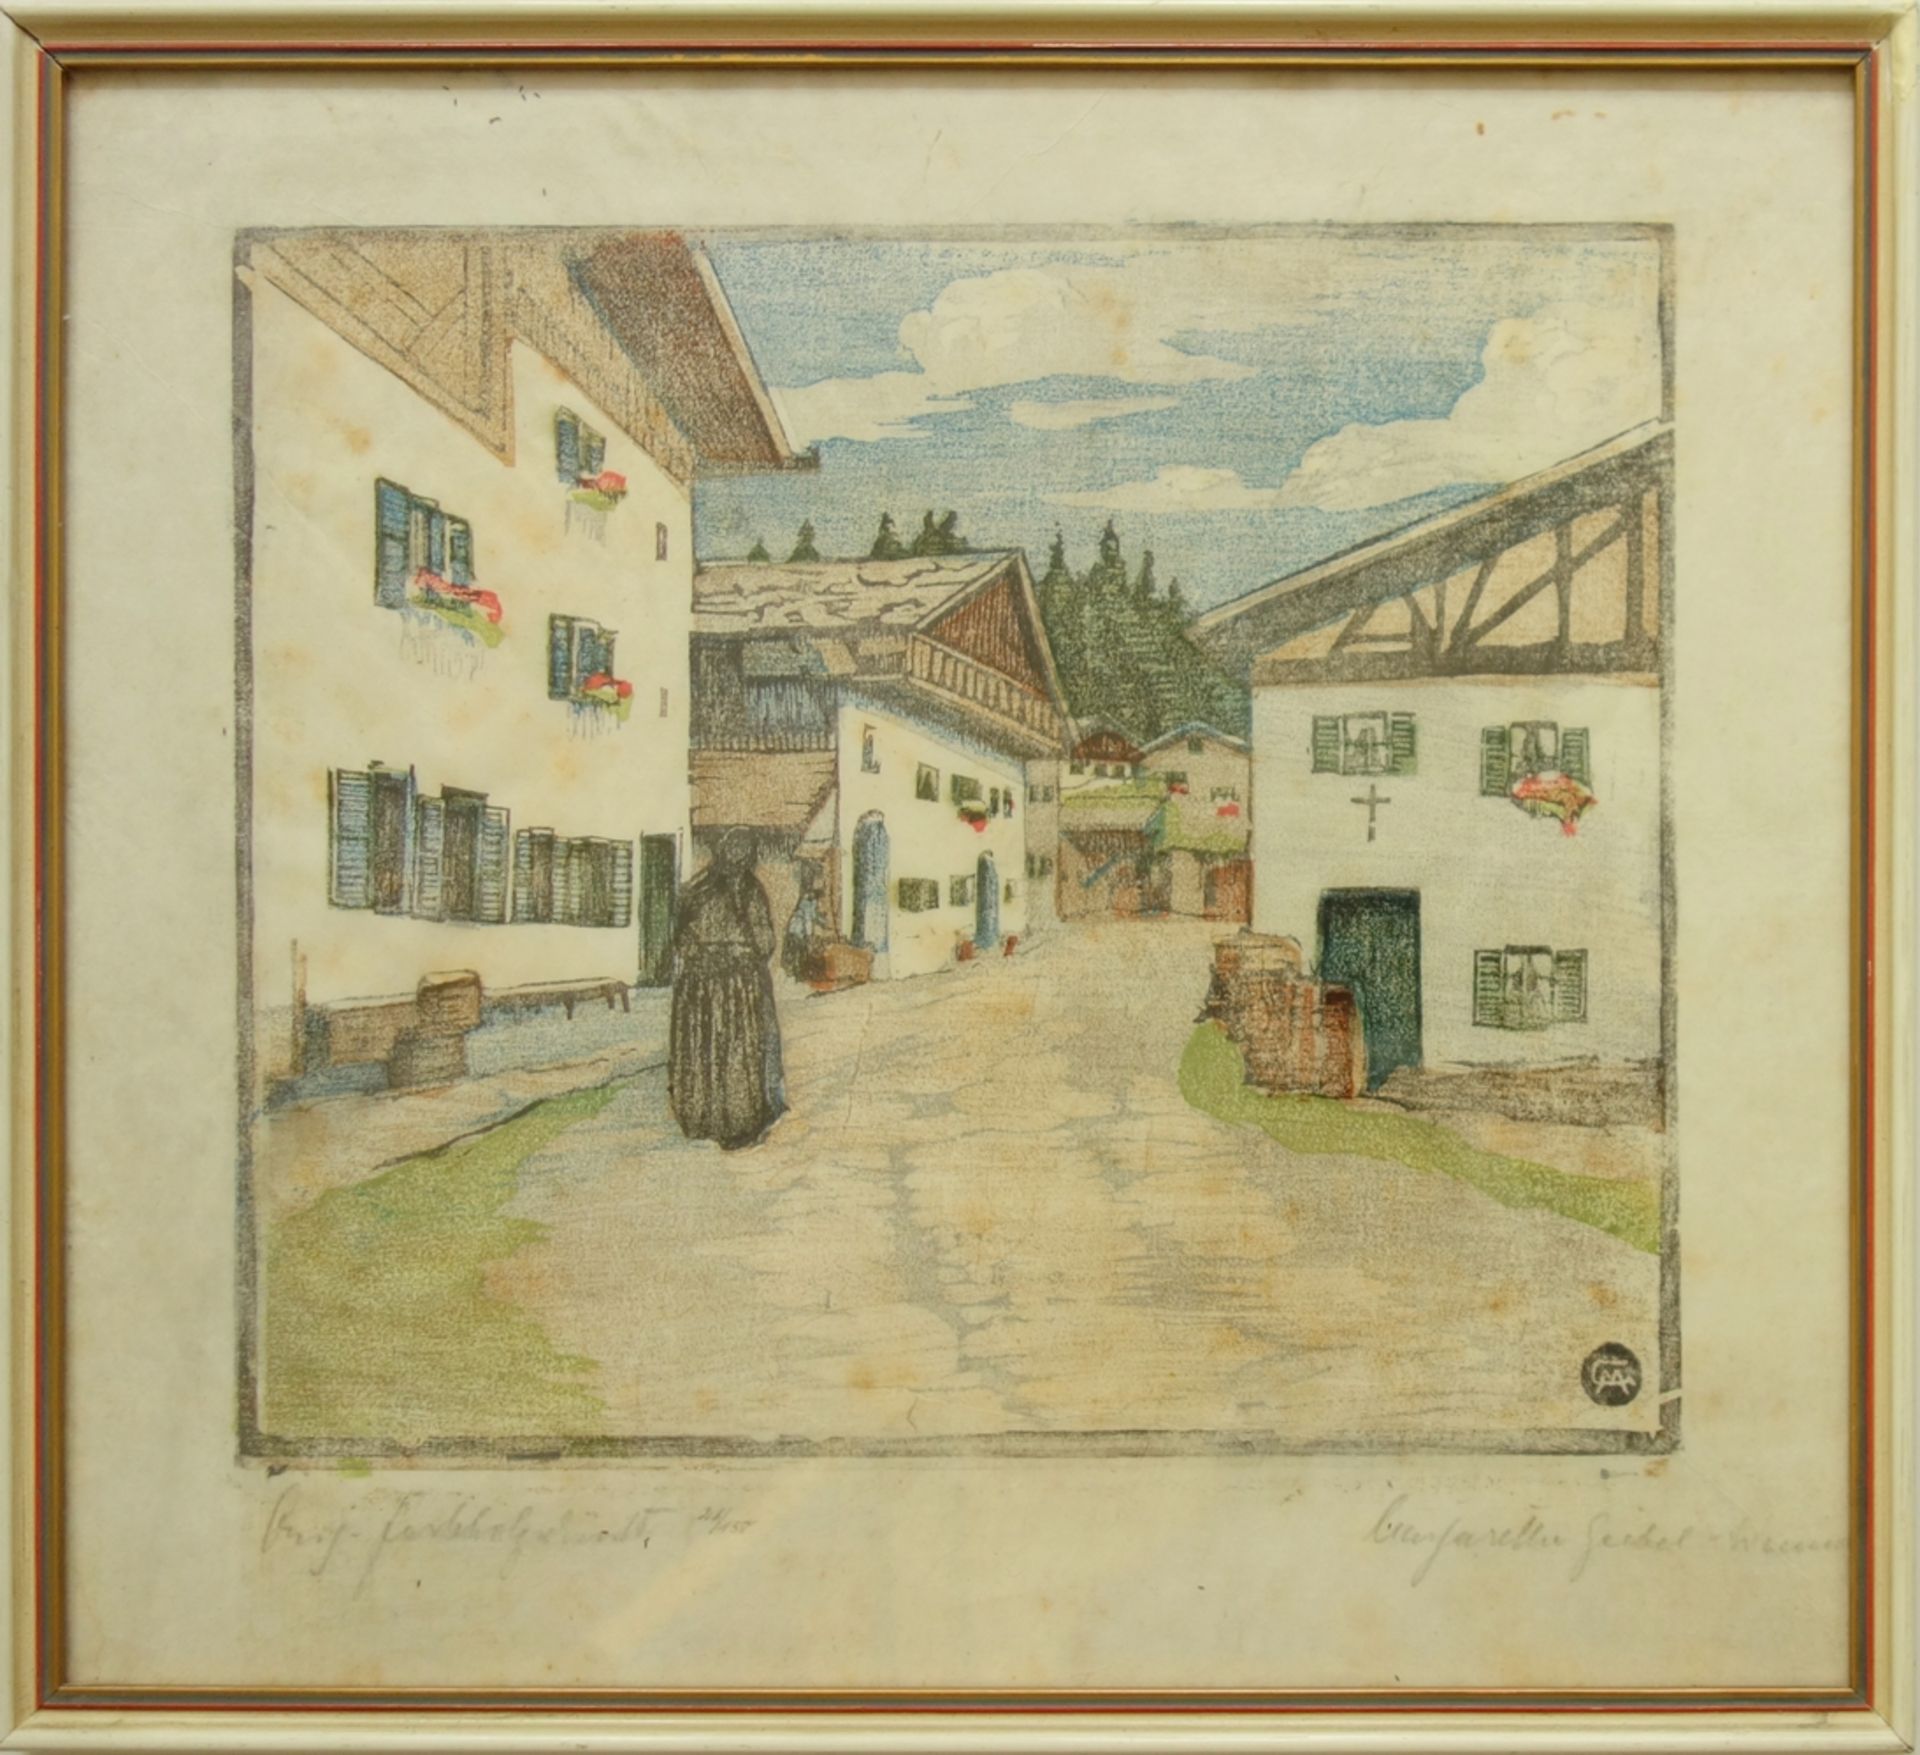 Margarethe Geibel (1876-1956) "Dorfstraße in Mittenwald", um 1910, Farbholzschnitt, im Druckstock